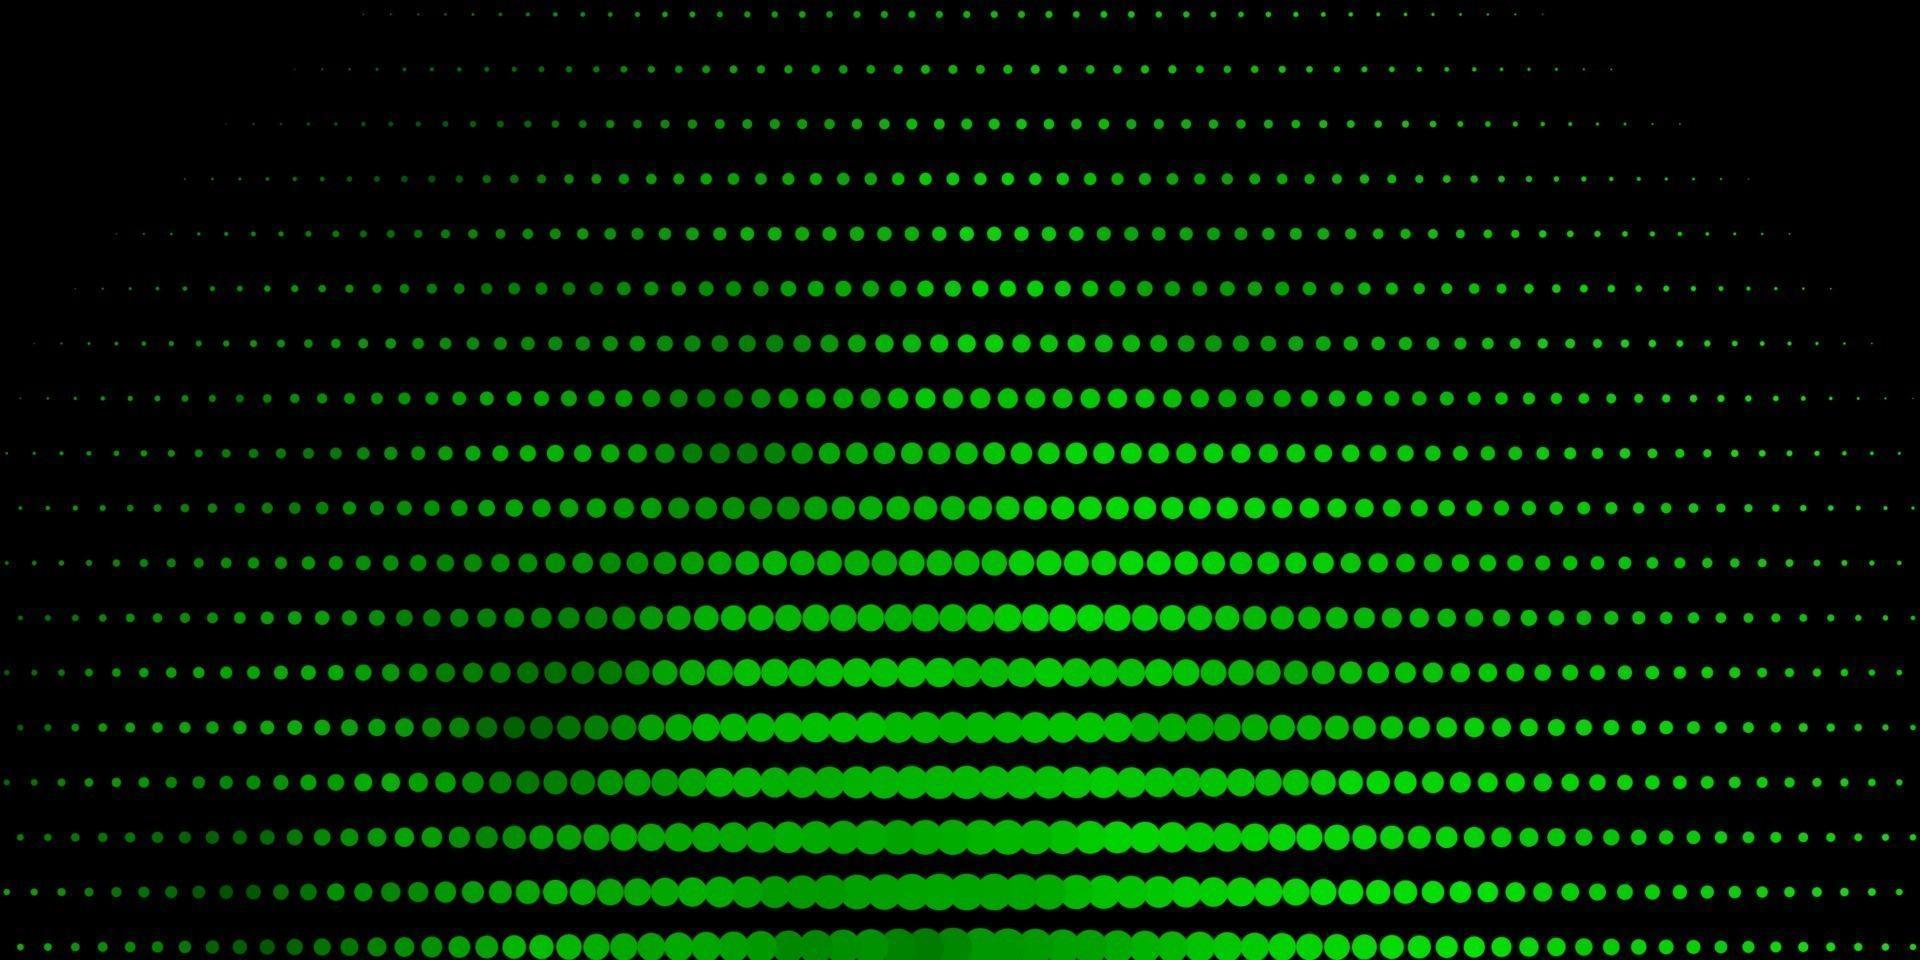 padrão de vetor verde escuro com esferas.